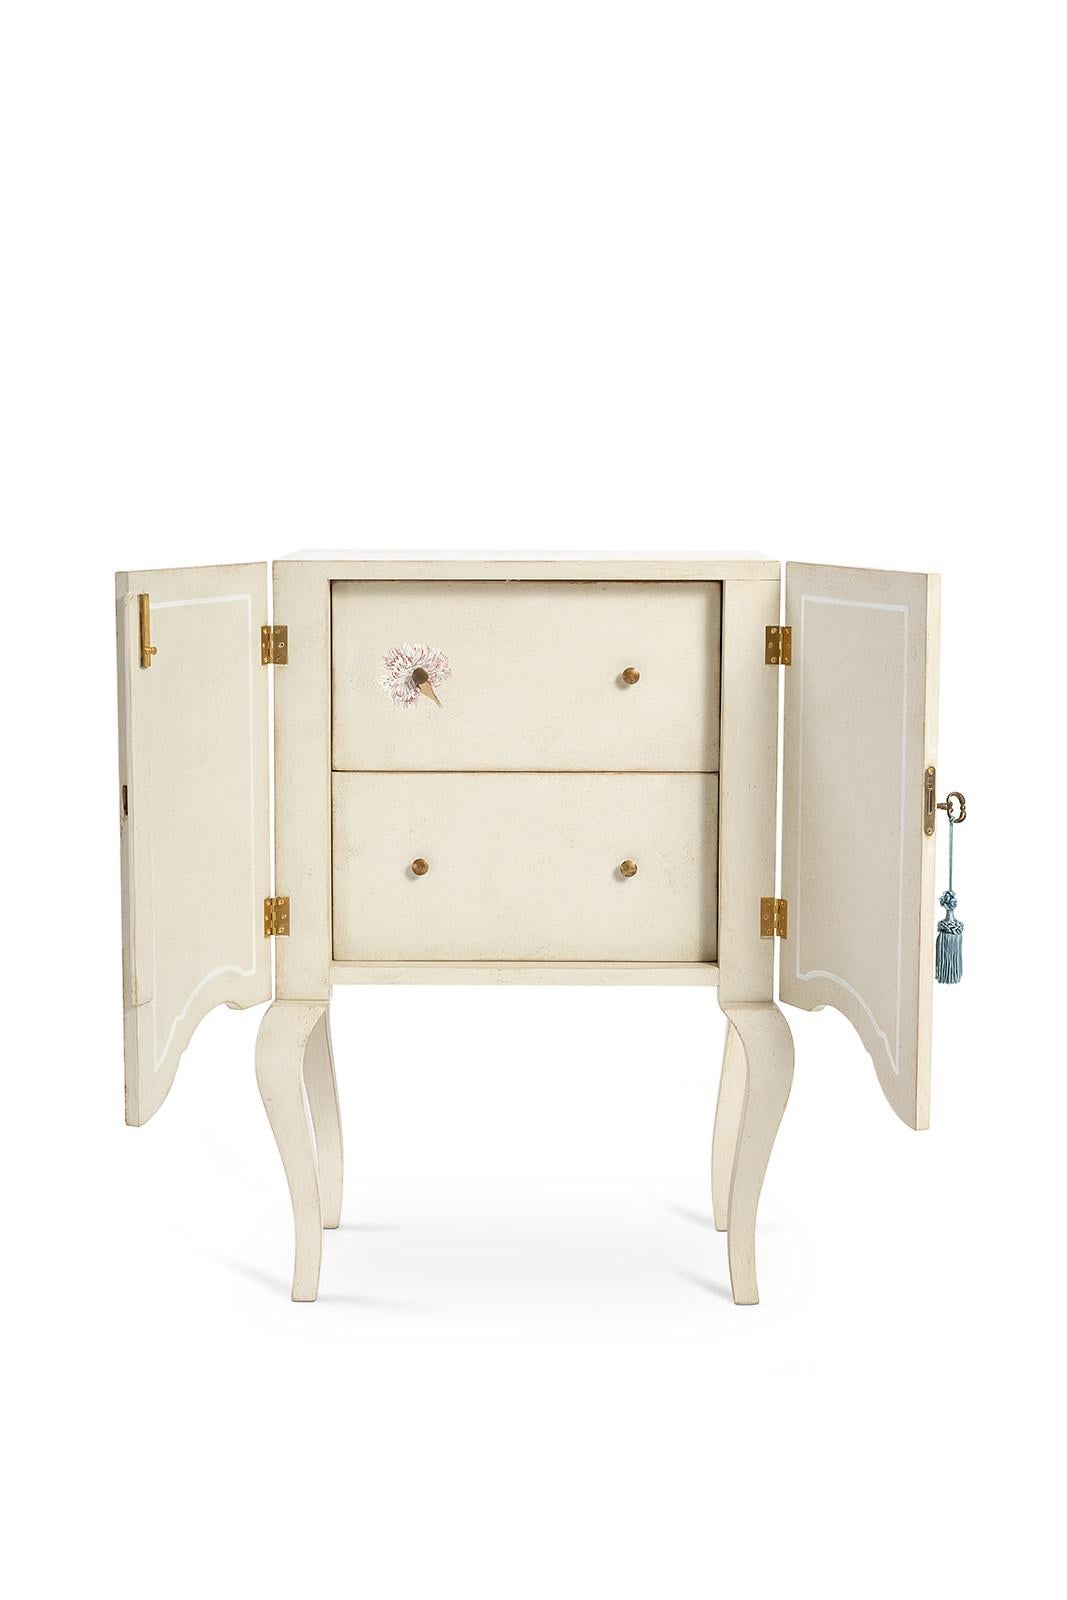 Aus unserer Hand-Painted Furniture Collection freuen wir uns, Ihnen unseren Brenta Nachttisch mit Innenschubladen vorstellen zu dürfen. 
Ein wunderschönes venezianisches Nachtkästchen, neu gestaltet mit einem frischen Design in einer hellen